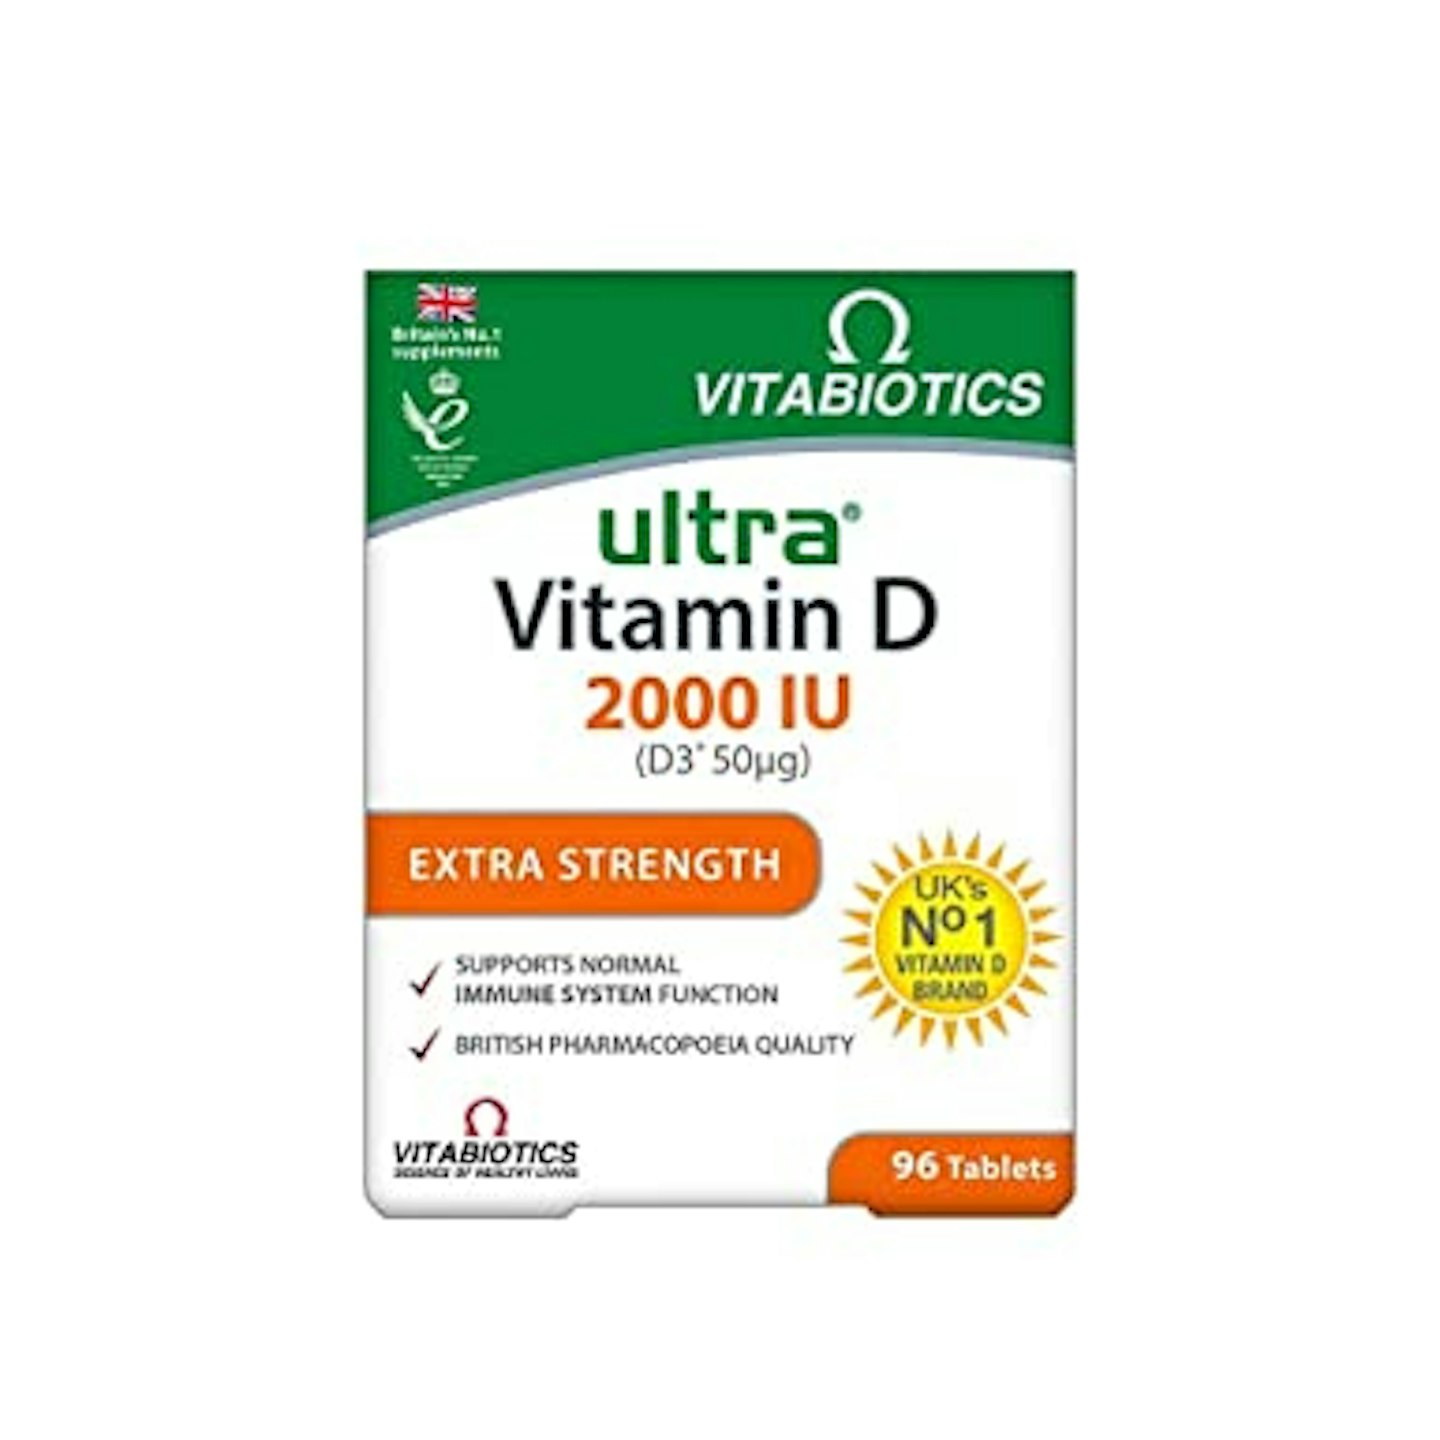 Vitabiotics Ultra Vitamin D, £8.15